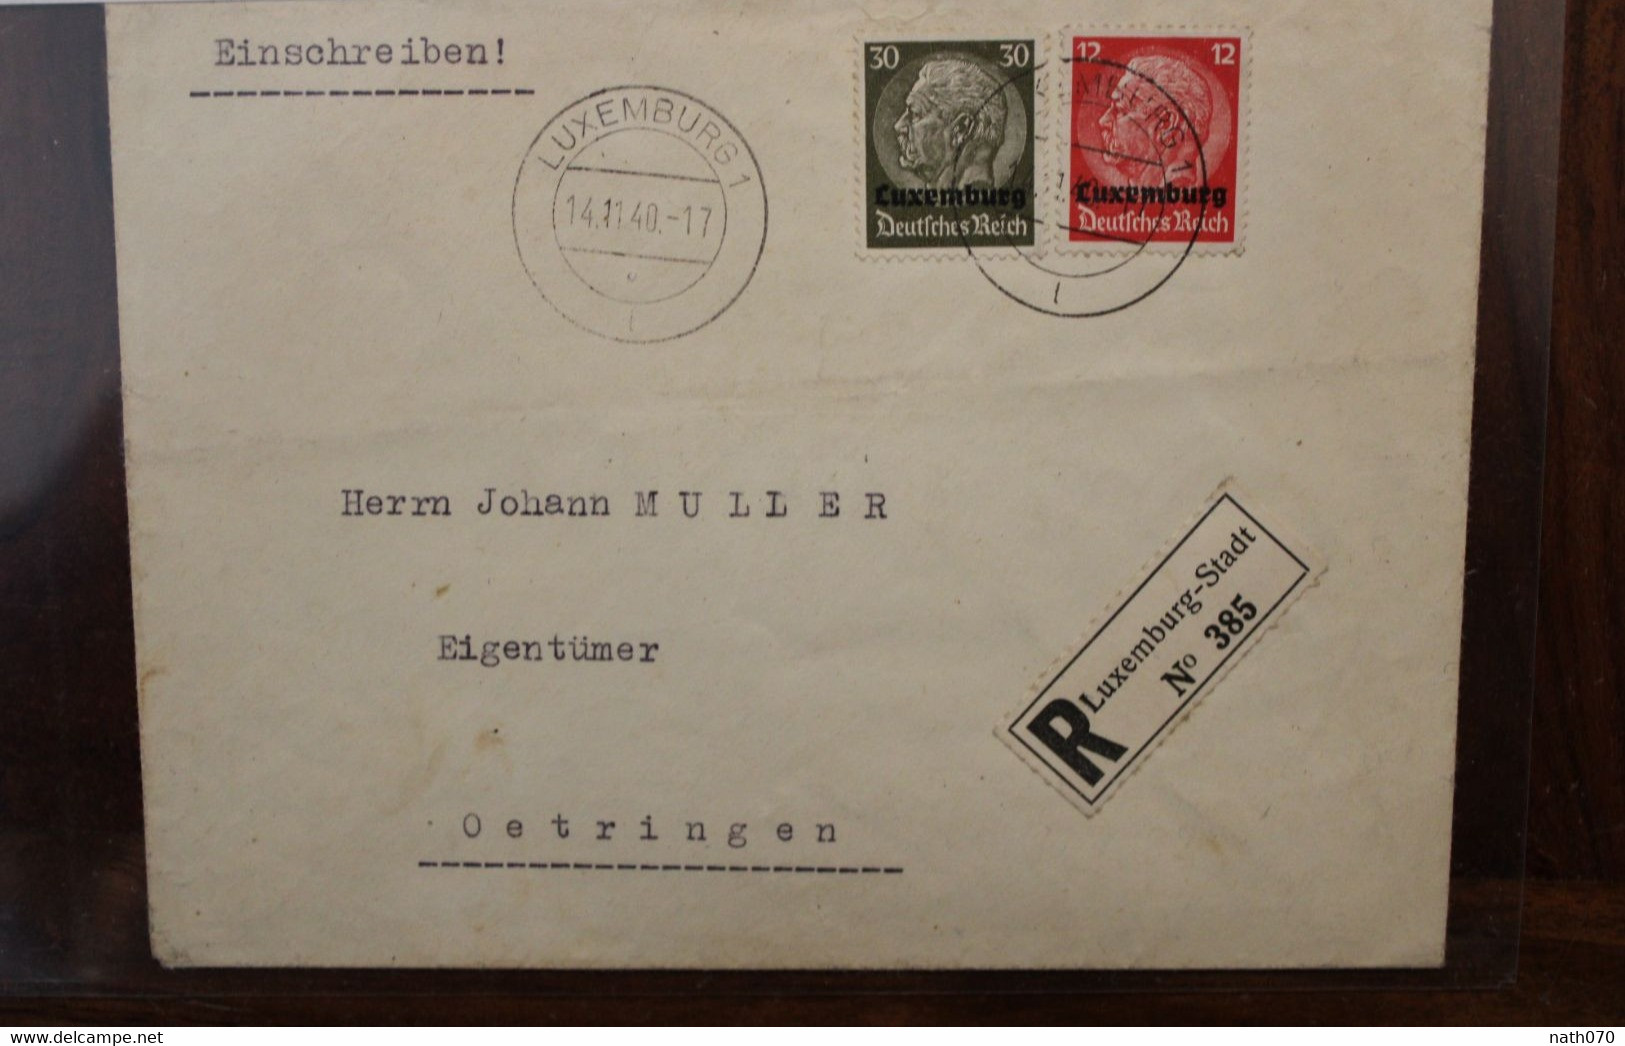 LUXEMBURG 1940 Oetringen Einschreiben Cover Luxembourg Registered Recommandé Besetzung Occupation - Occupazione 1938 – 45